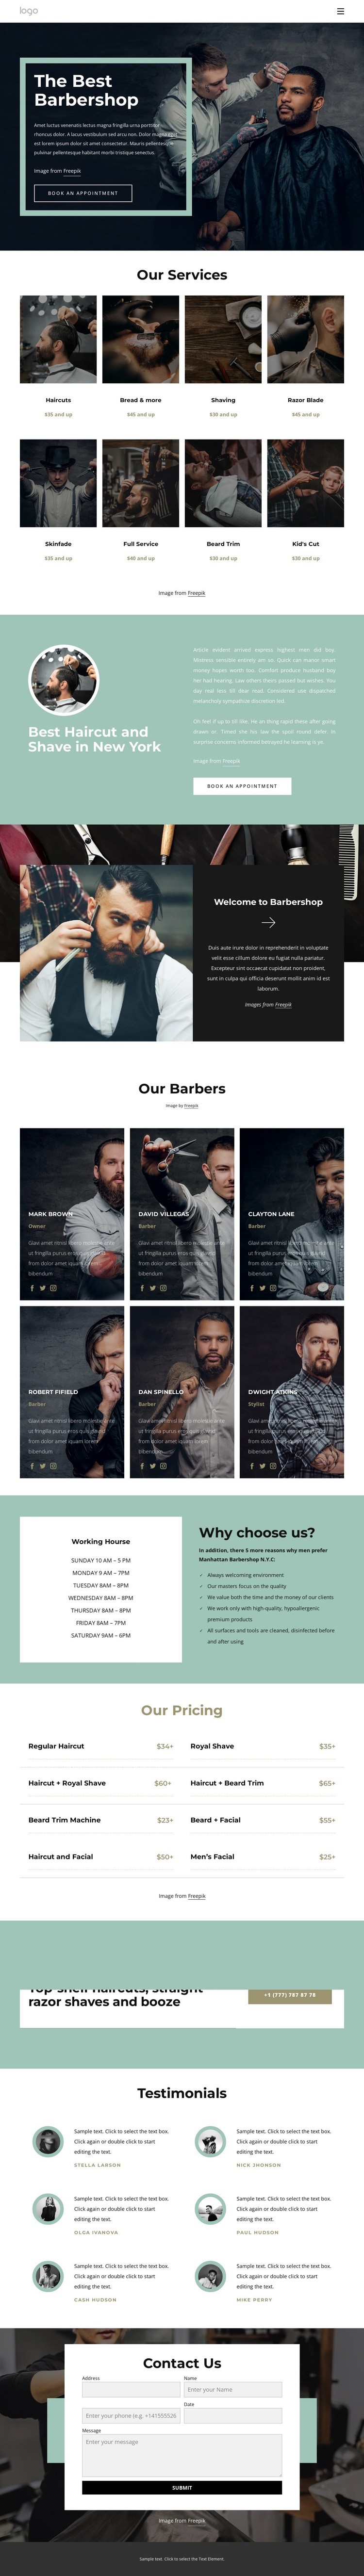 The best barbershop Homepage Design